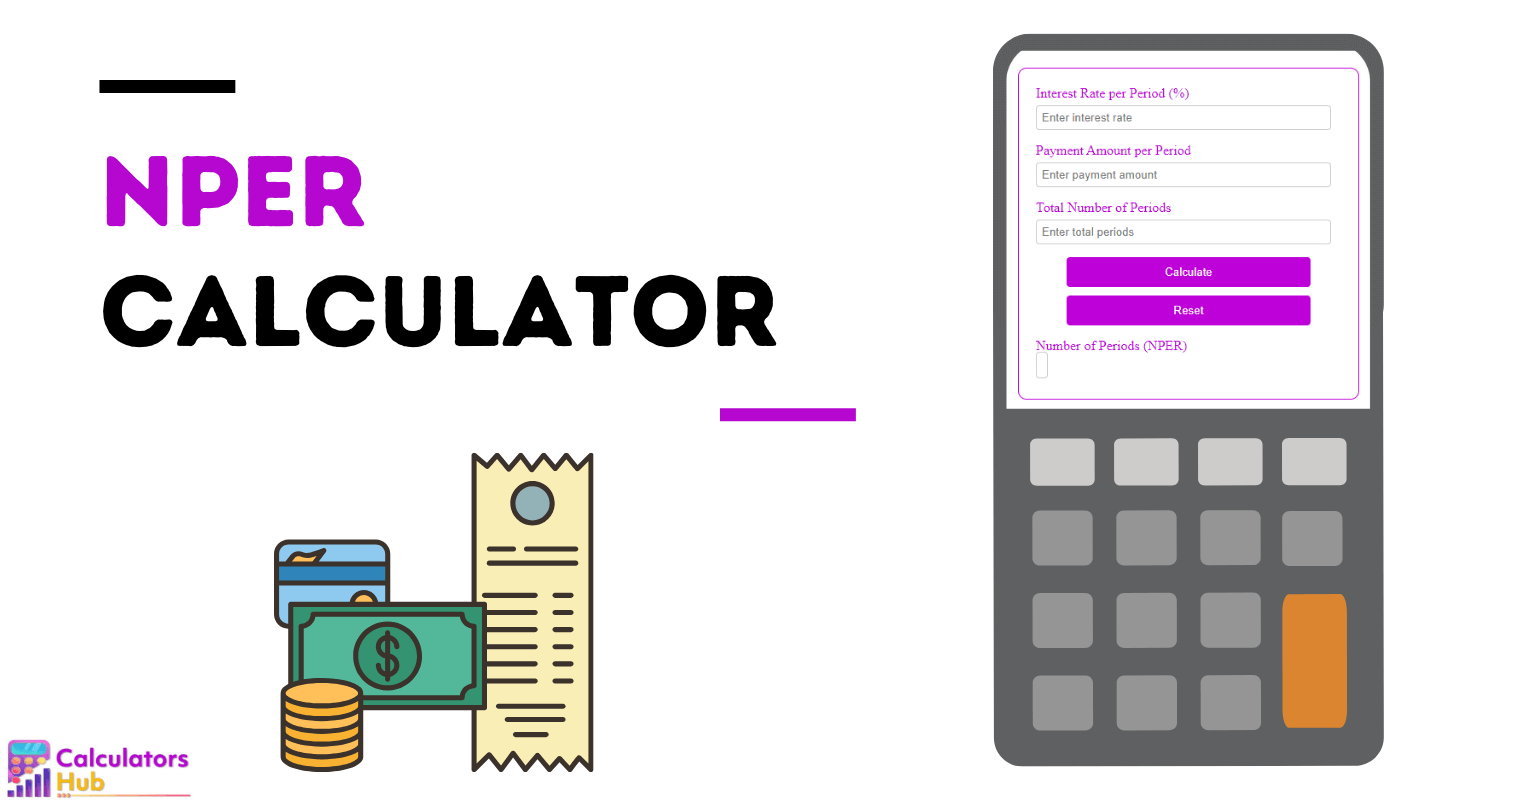 NPER Calculator